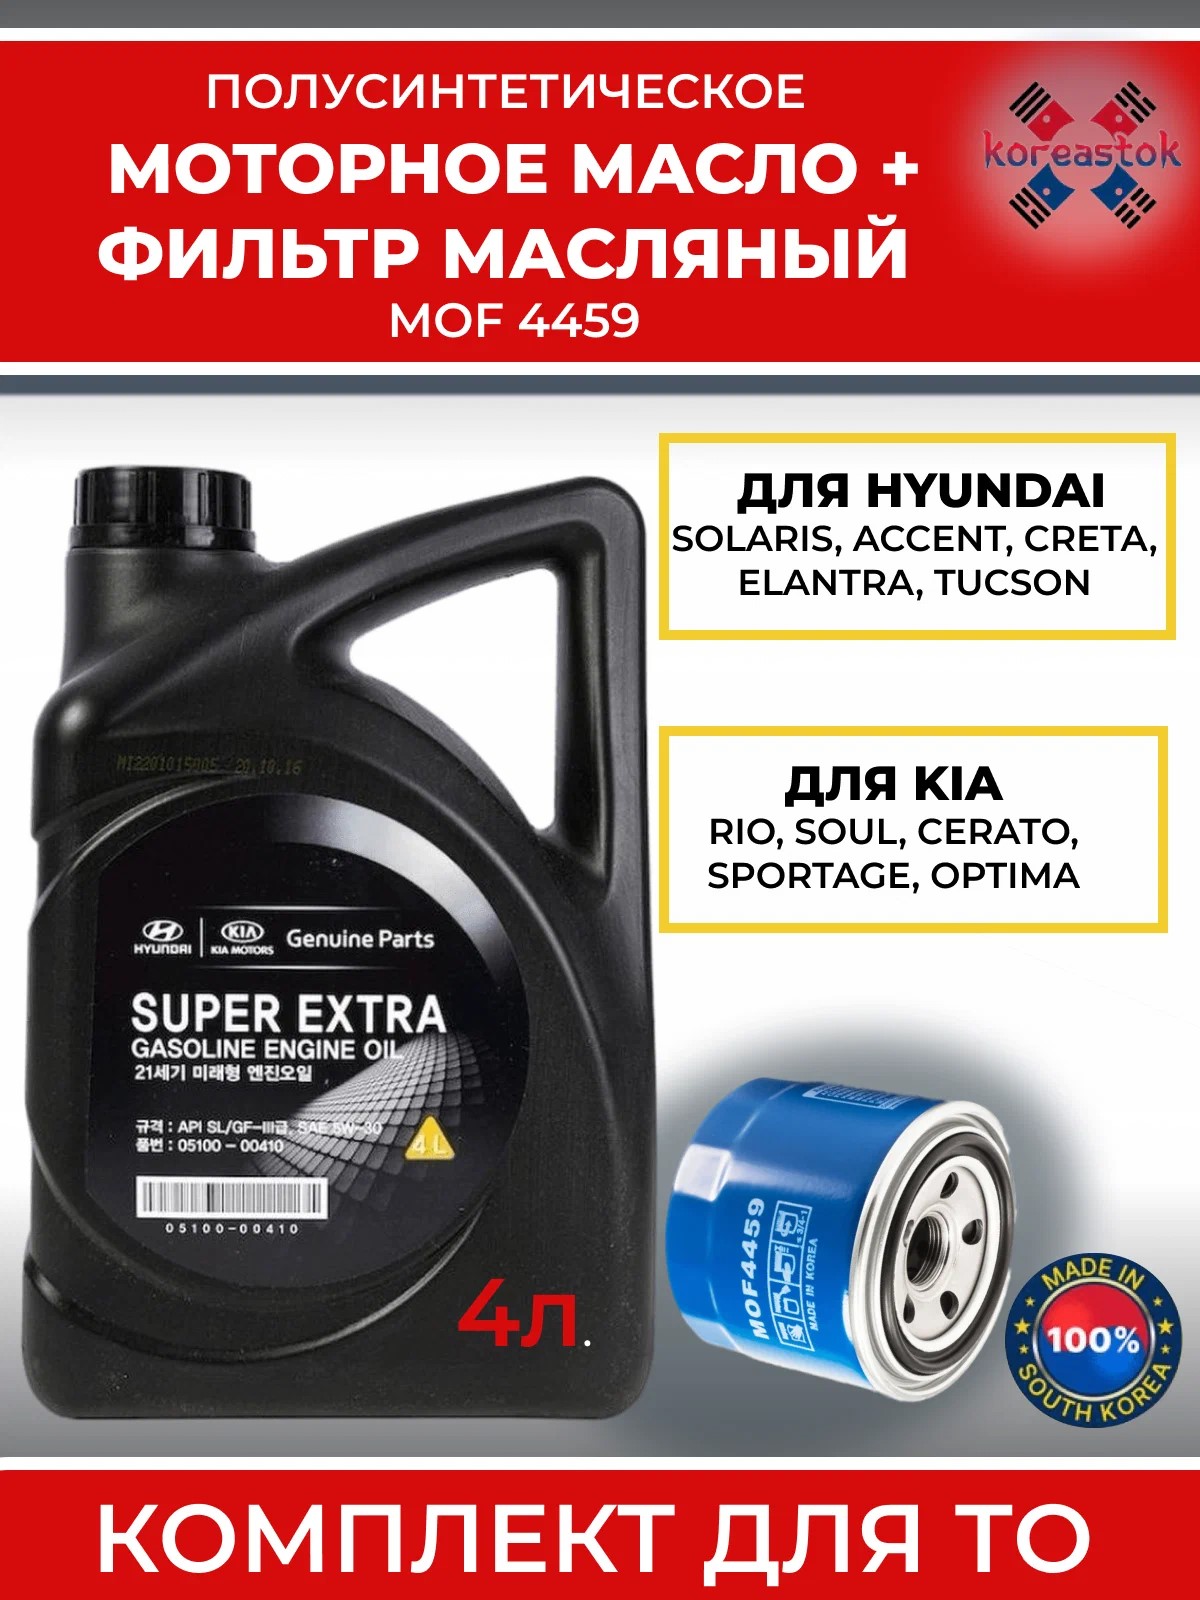 Комплект для замены масла, KOREASTOK, фильтр MANDO MOF4459+масло Super Extra 5w30, 4л.